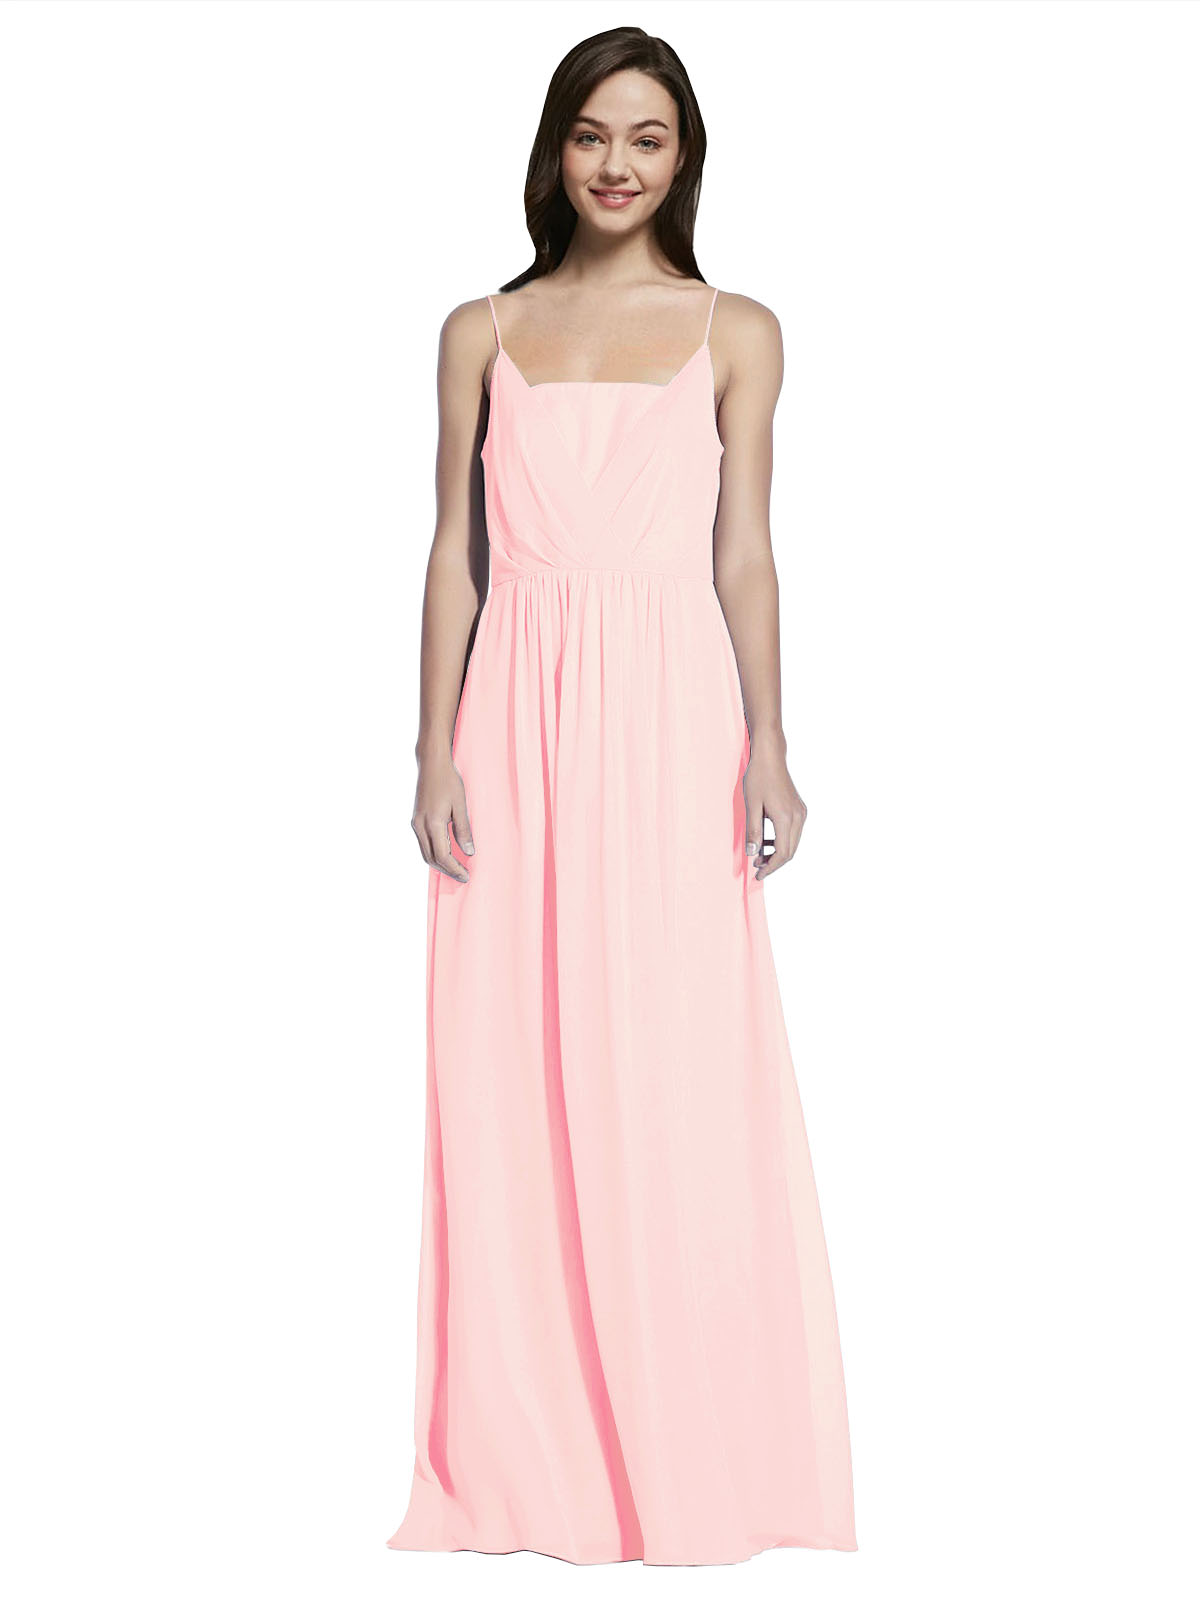 Long A-Line Spaghetti Straps Sleeveless Pink Chiffon Bridesmaid Dress Owen